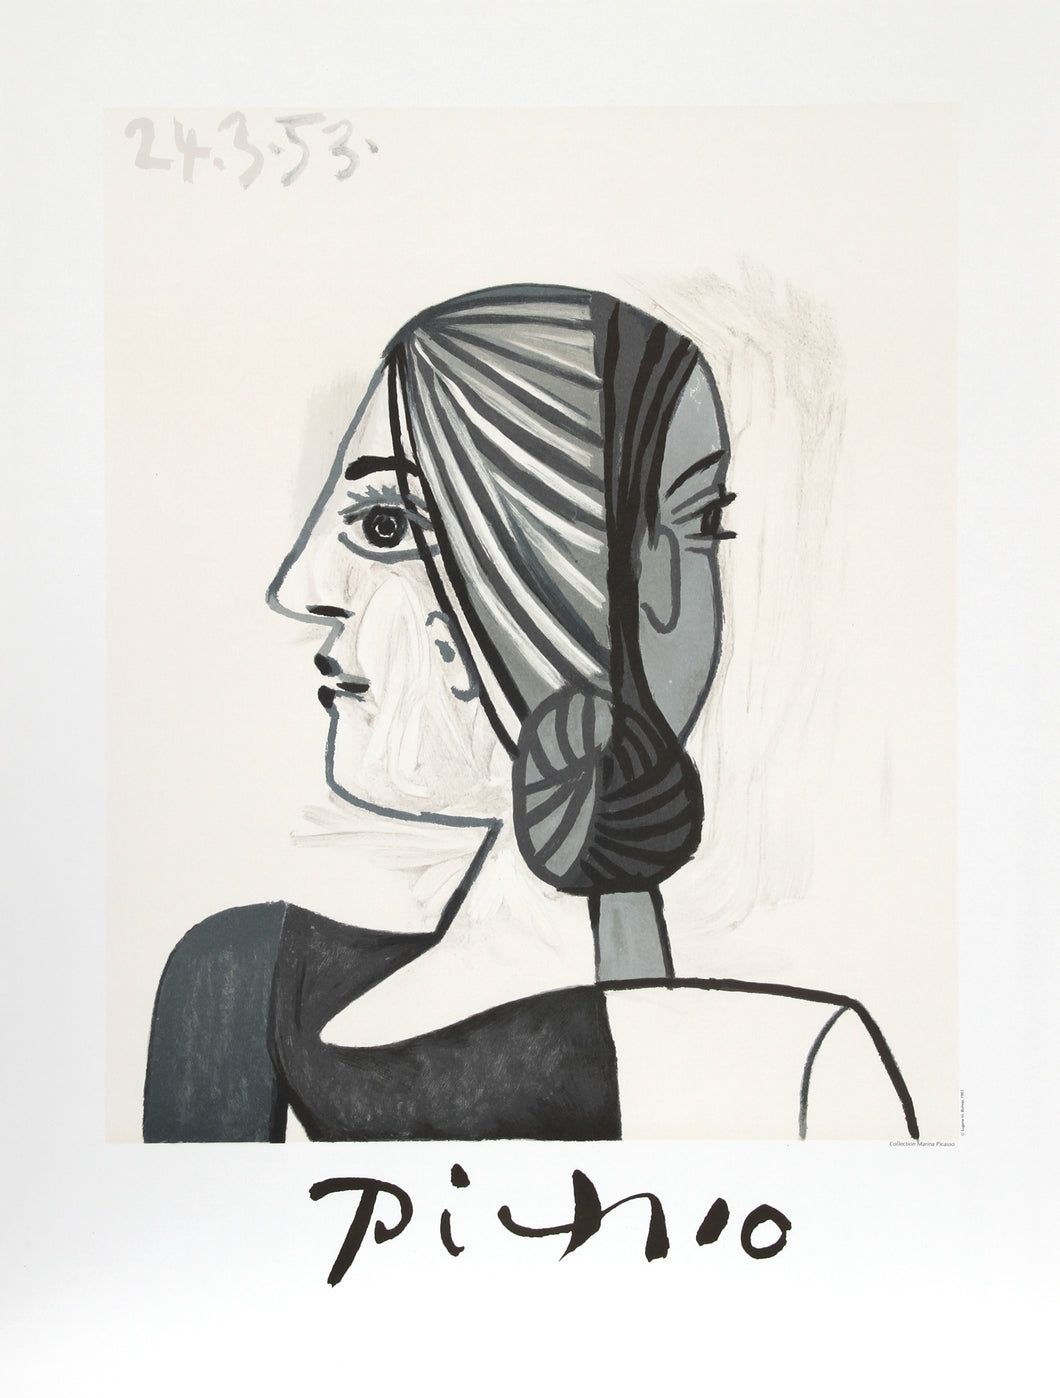 Pablo Picasso, Tete, 23-4-k, Lithograph